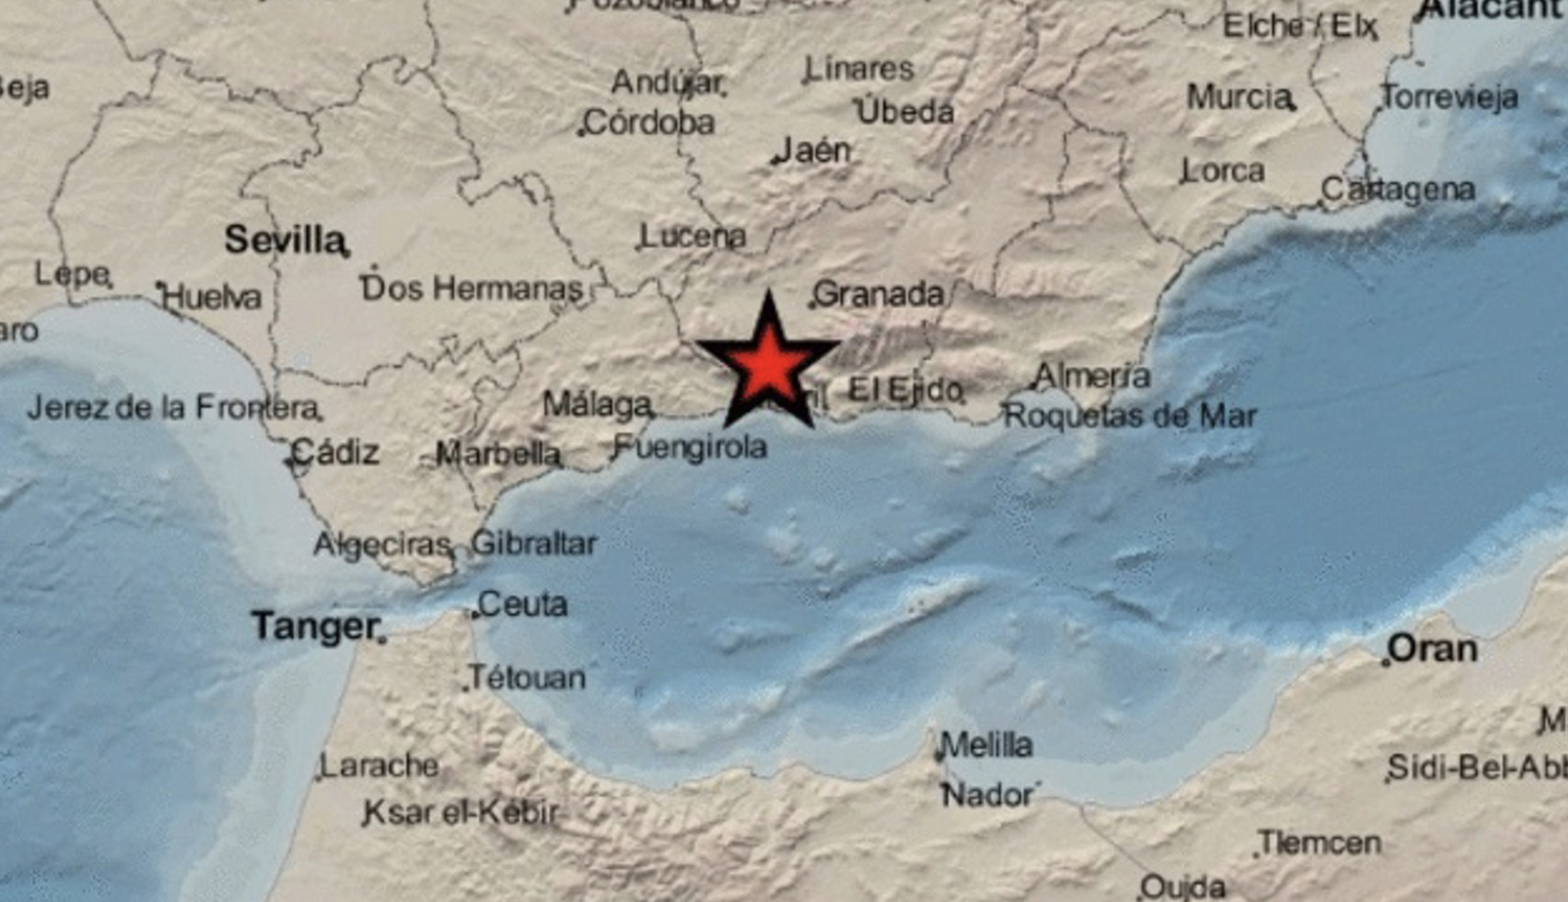 Zona donde se han producido los seísmos en Andalucía.